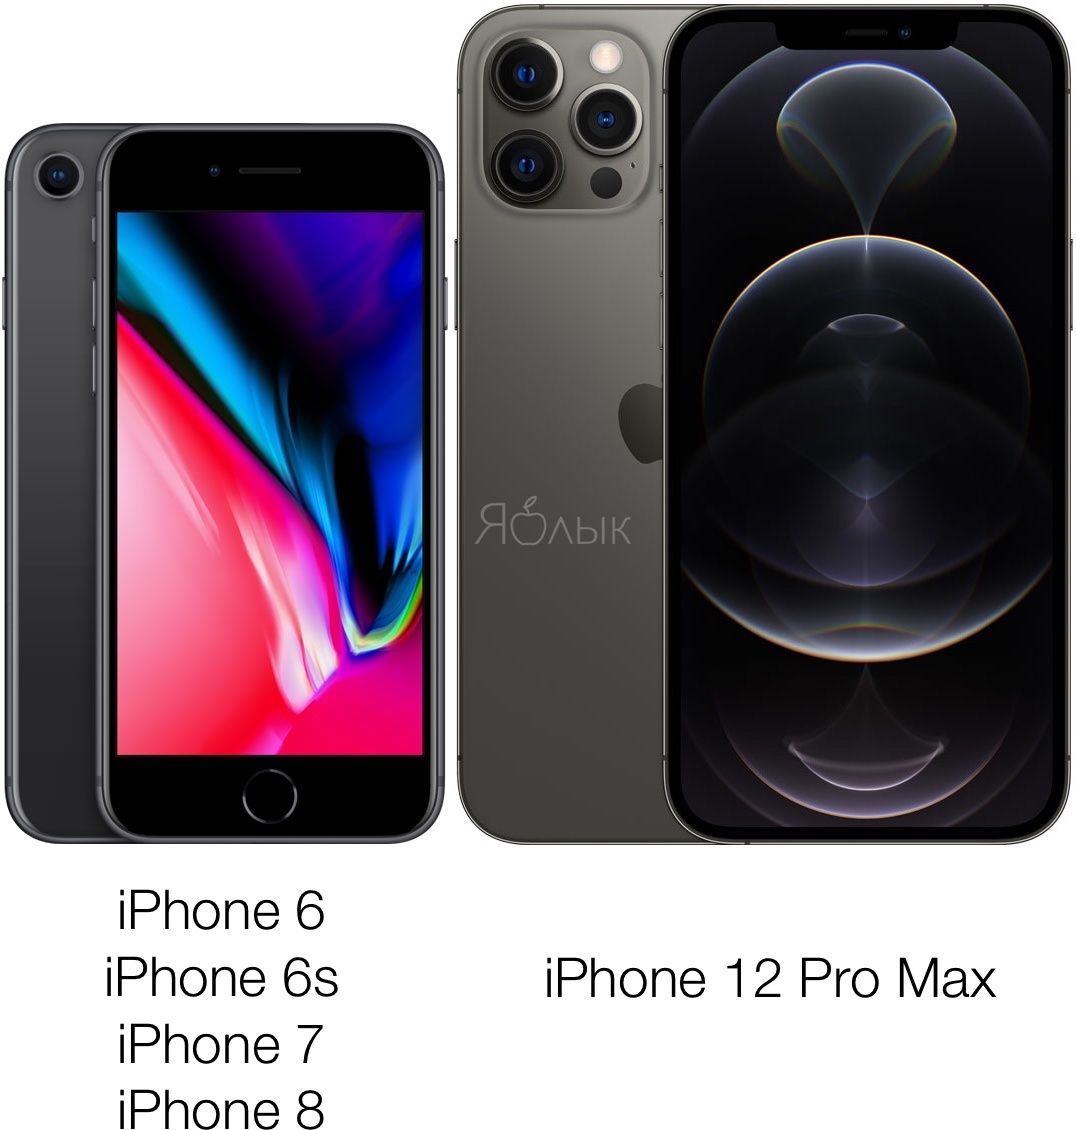 Ð¡Ñ€Ð°Ð²Ð½ÐµÐ½Ð¸Ðµ Ñ€Ð°Ð·Ð¼ÐµÑ€Ð¾Ð² iPhone 12, 12 Pro Max, 12 mini, 11, 11